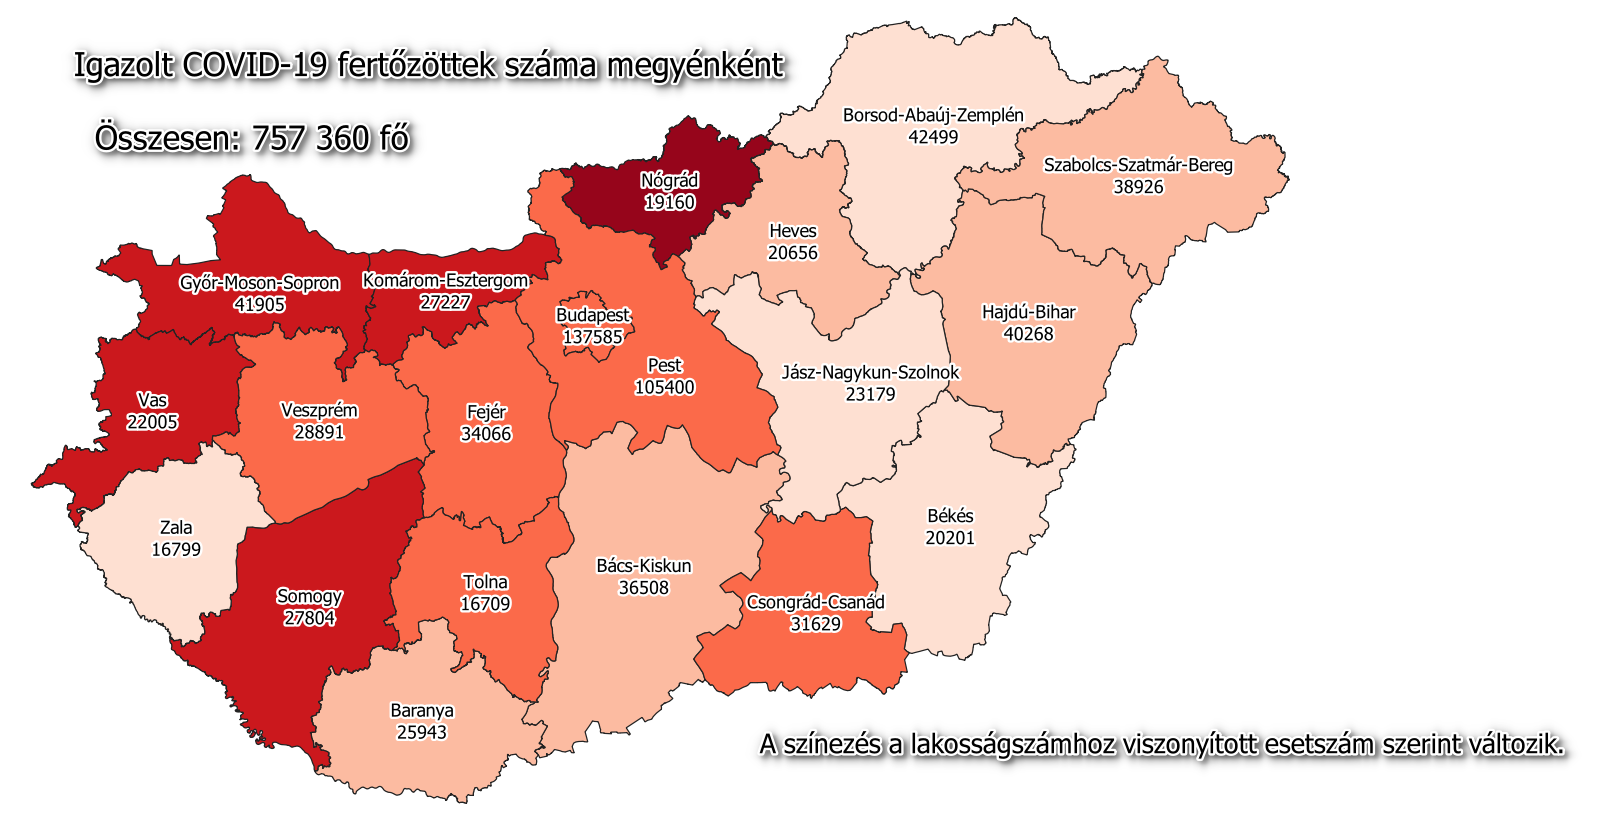 हंगरी का नक्शा कोरोनावायरस